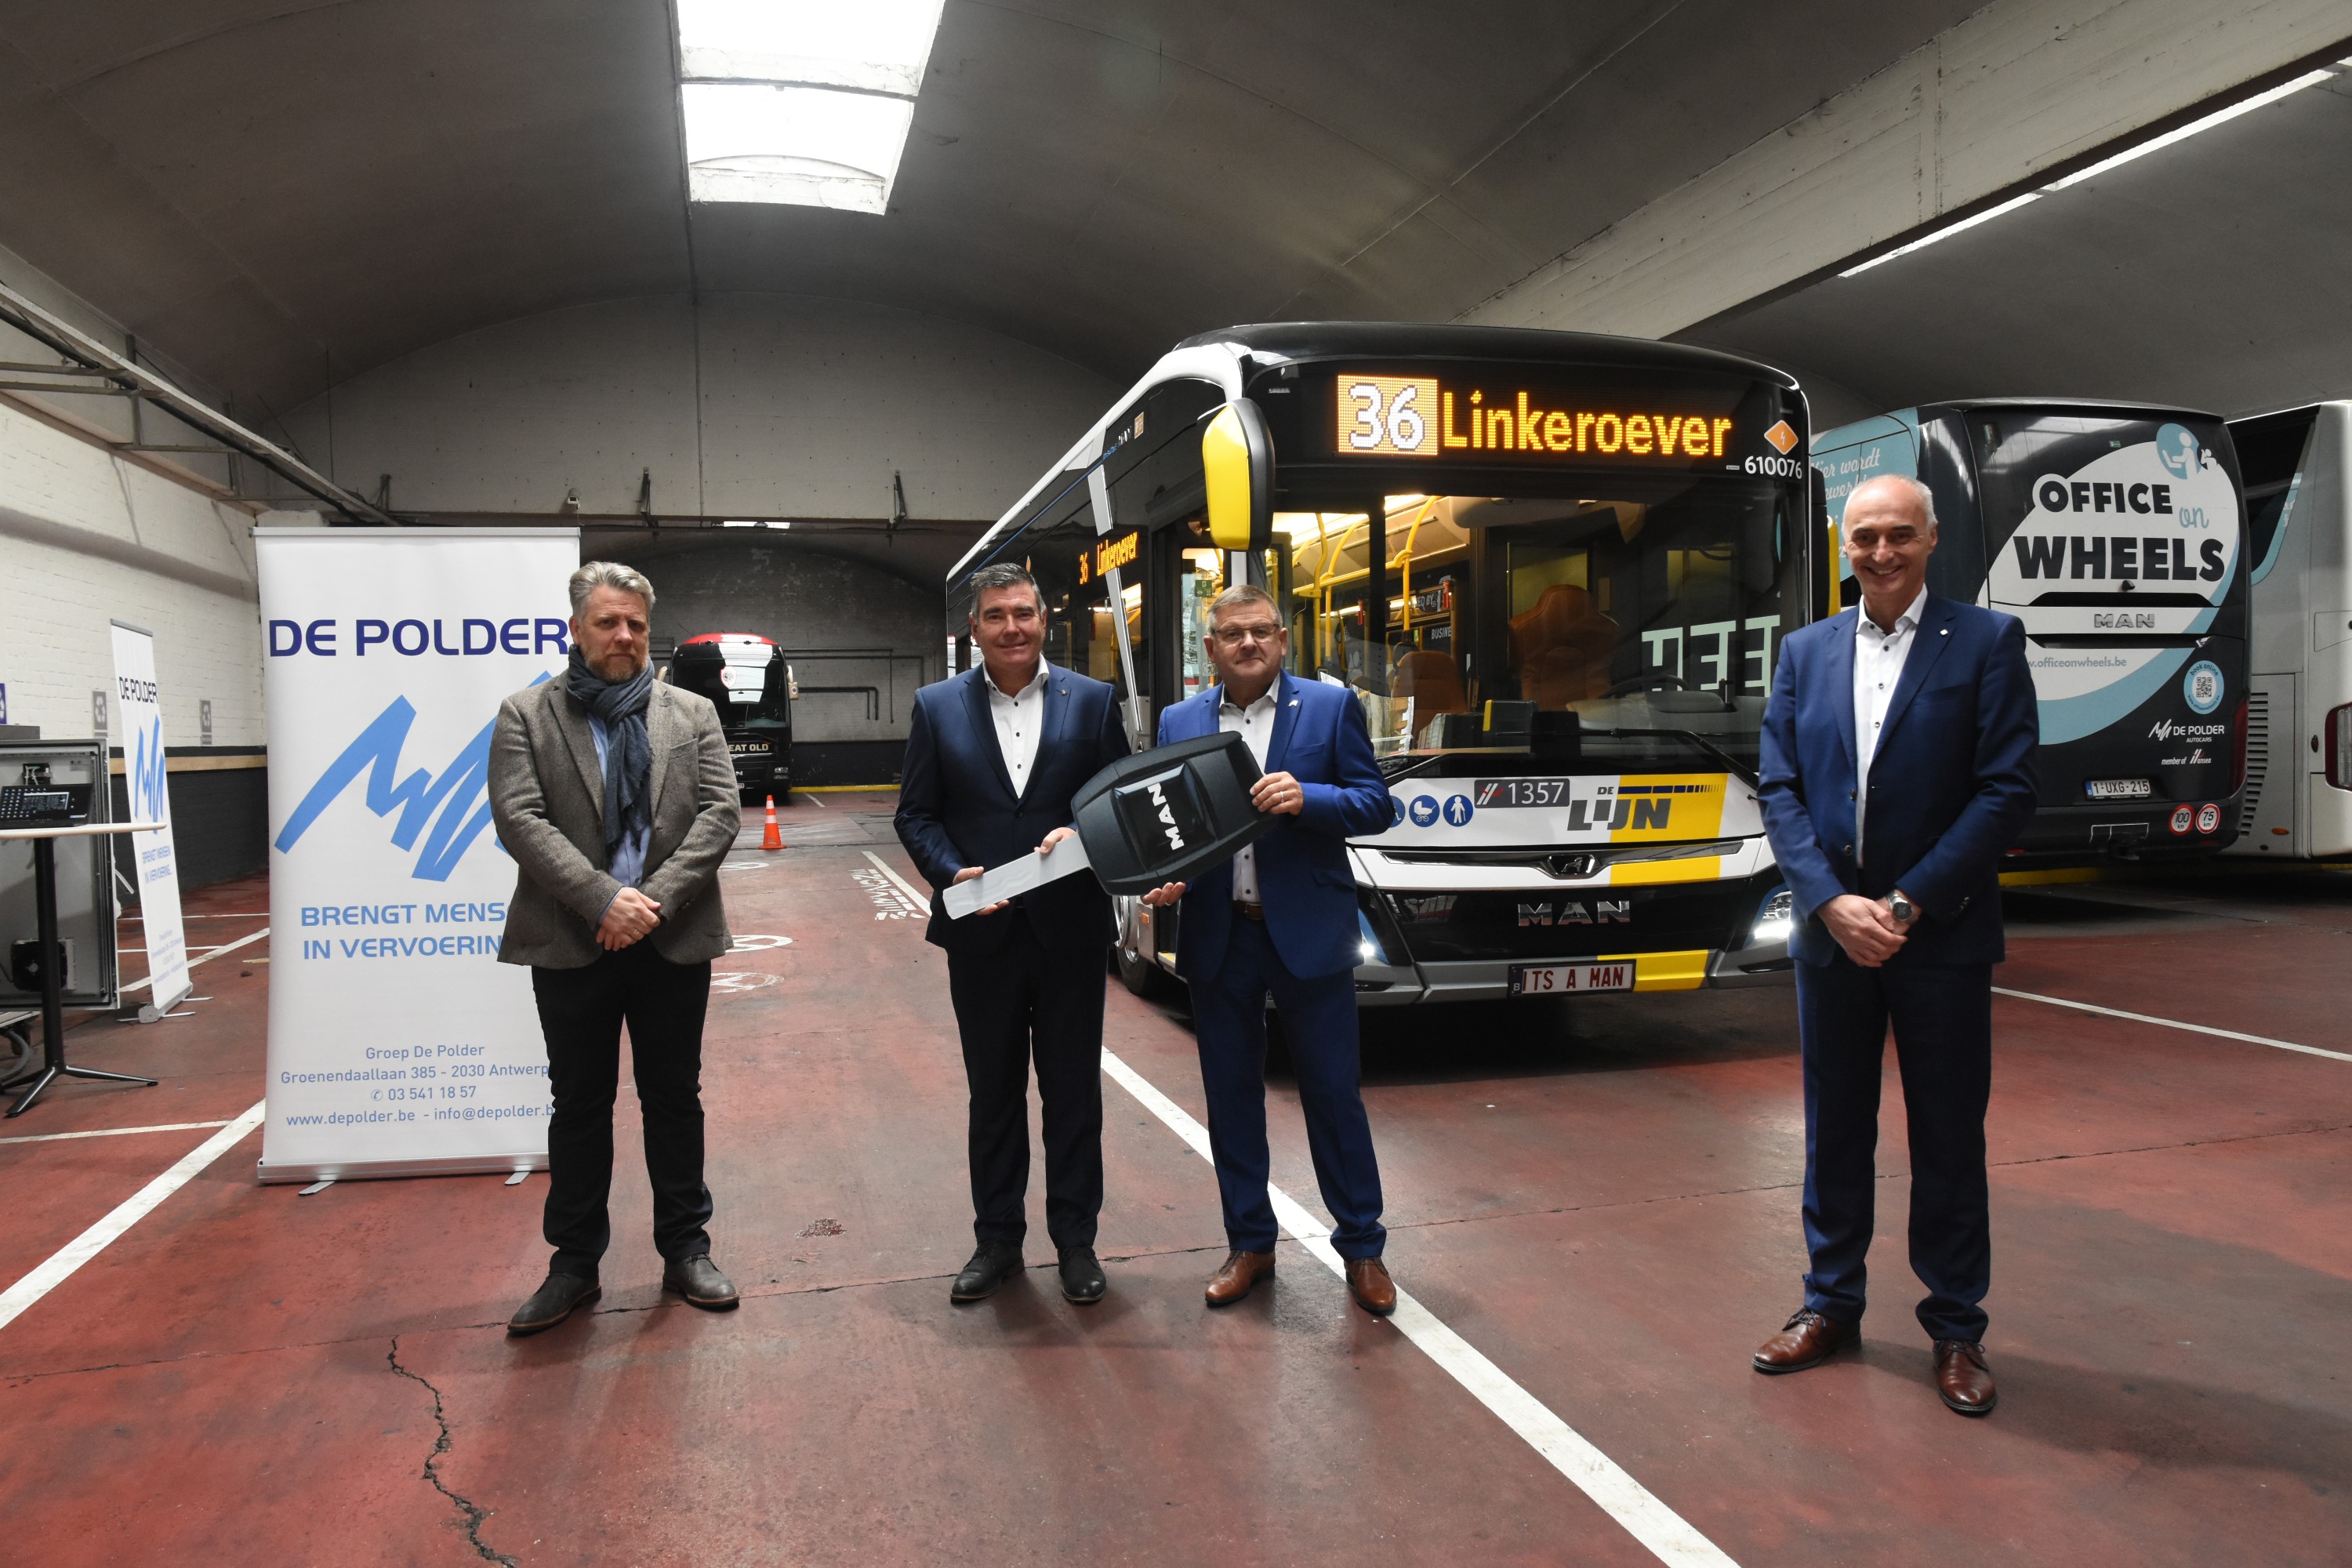 Openbaar vervoer | Autocars De Polder Antwerpen uw bus en autocar specialist voor Antwerpen, Luchtbal, Merksem en omstreken